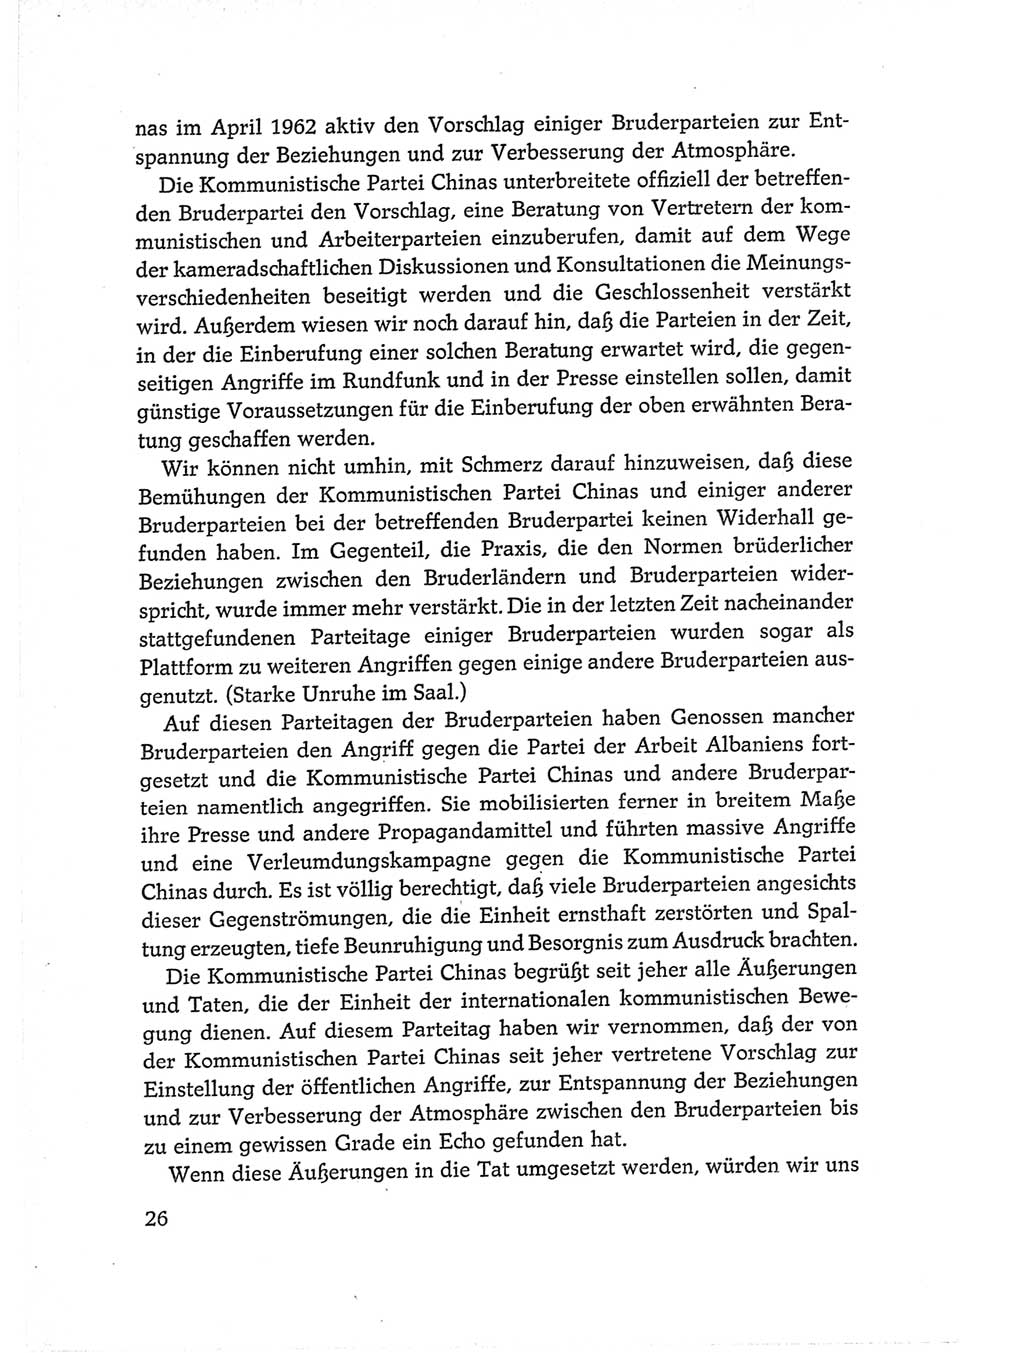 Protokoll der Verhandlungen des Ⅵ. Parteitages der Sozialistischen Einheitspartei Deutschlands (SED) [Deutsche Demokratische Republik (DDR)] 1963, Band Ⅱ, Seite 26 (Prot. Verh. Ⅵ. PT SED DDR 1963, Bd. Ⅱ, S. 26)